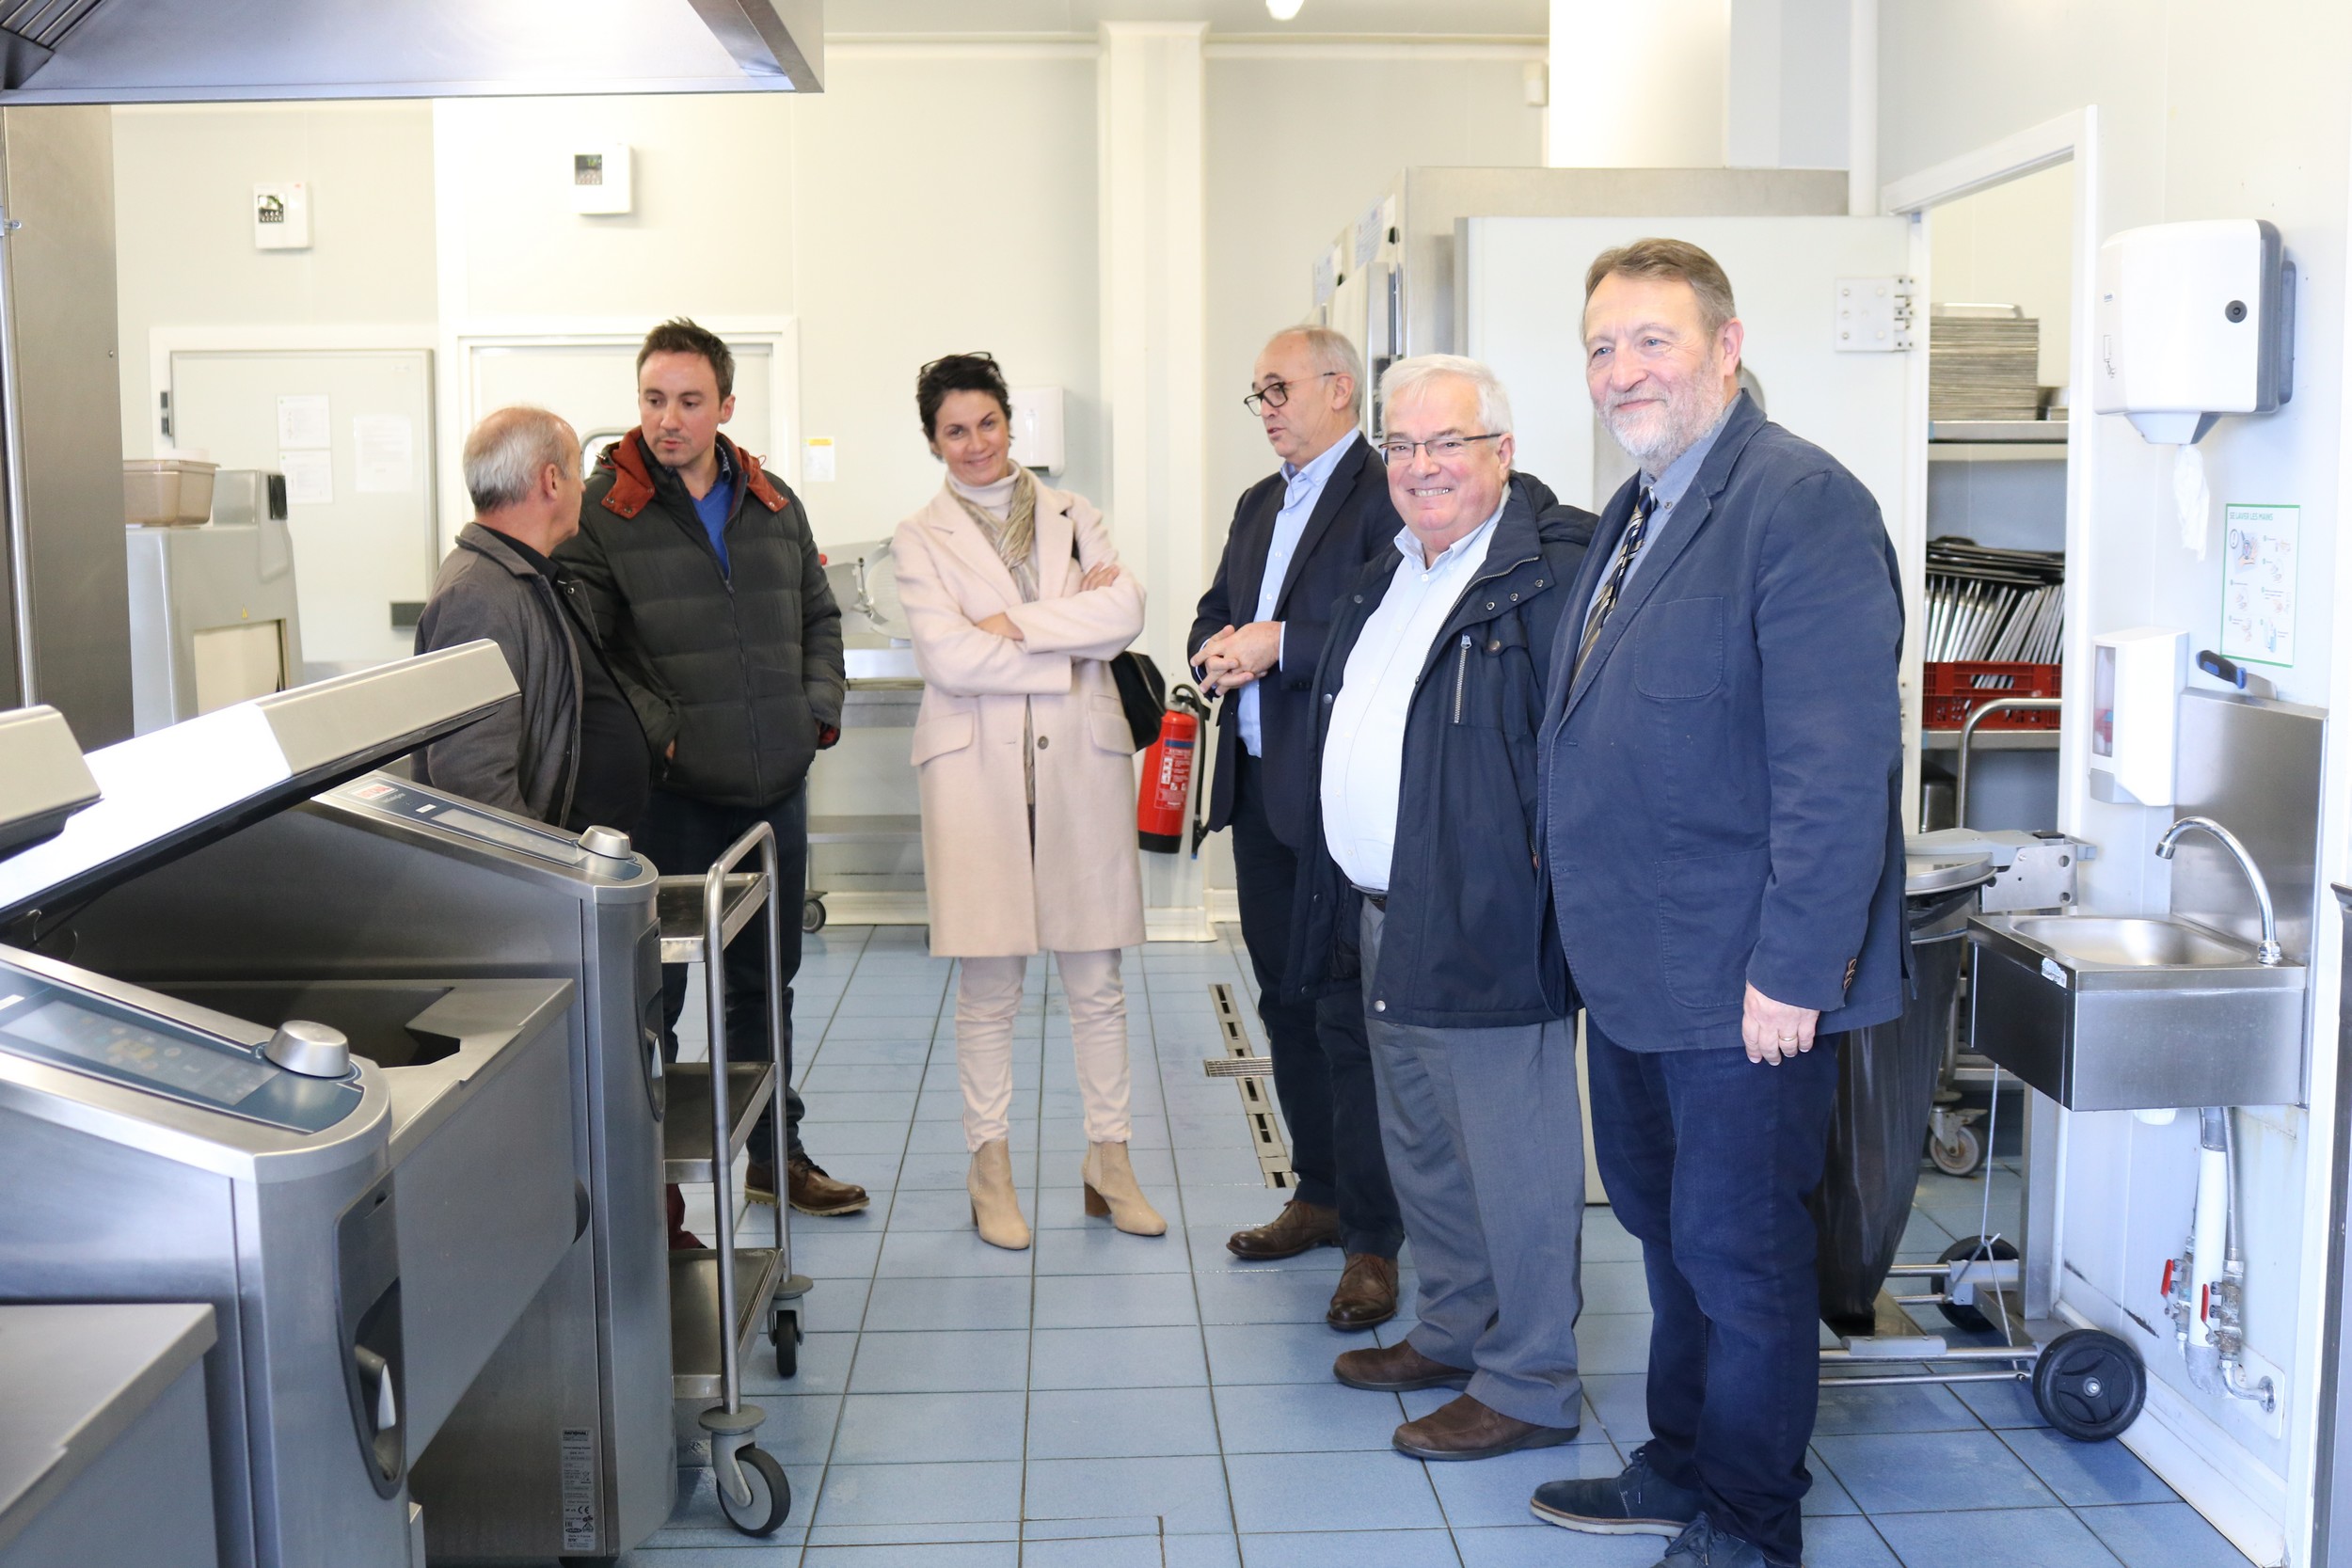 Le 7 novembre 2019 à Alençon, l’Adapei de l’Orne a inauguré la nouvelle ligne de self de sa cuisine centrale, l’UCPR d’Adap’Entreprise 61